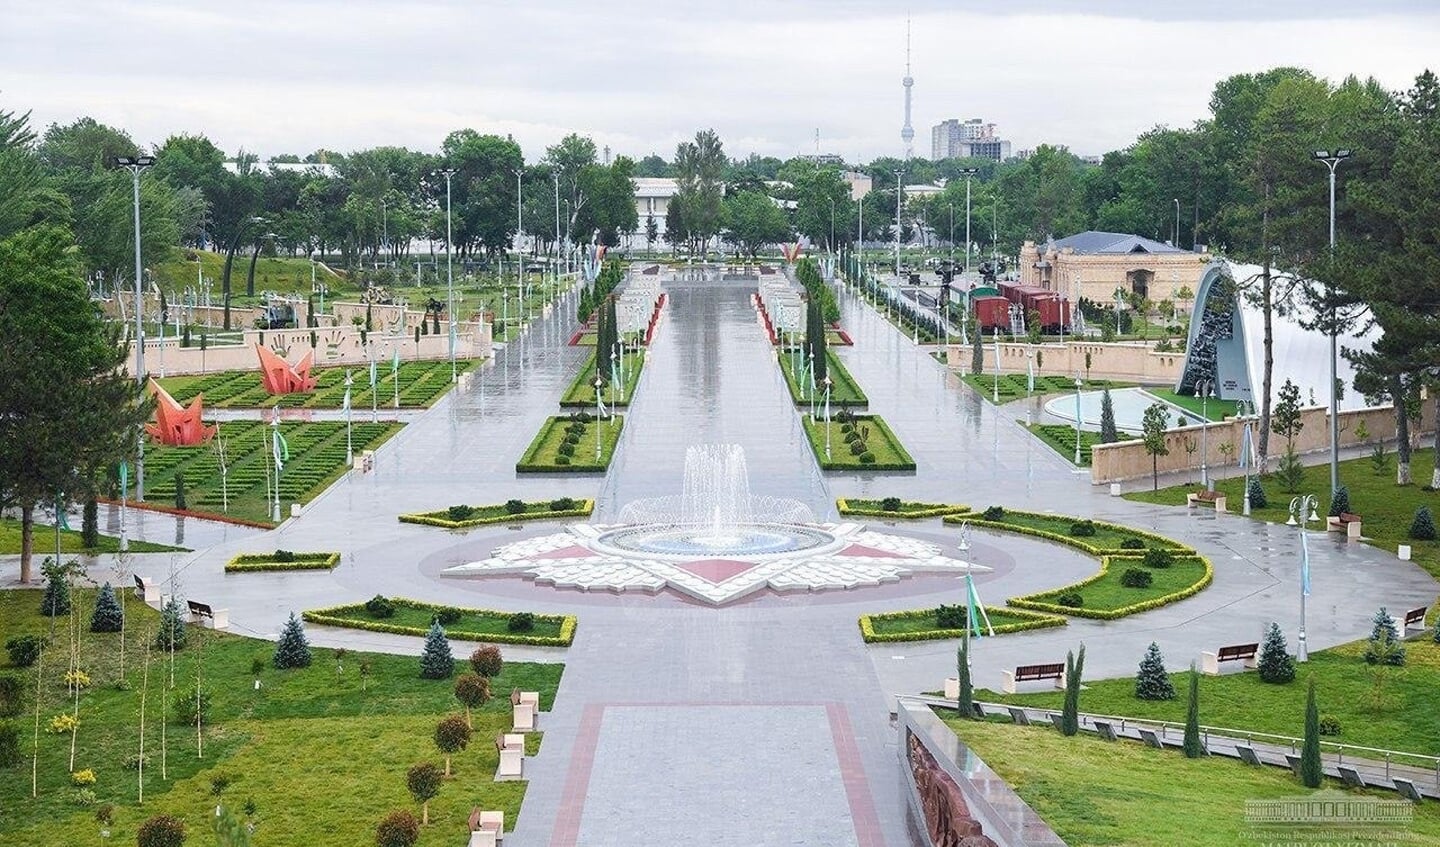 Overzichtsfoto van het nieuwe Overwinningspark in Tasjkent.